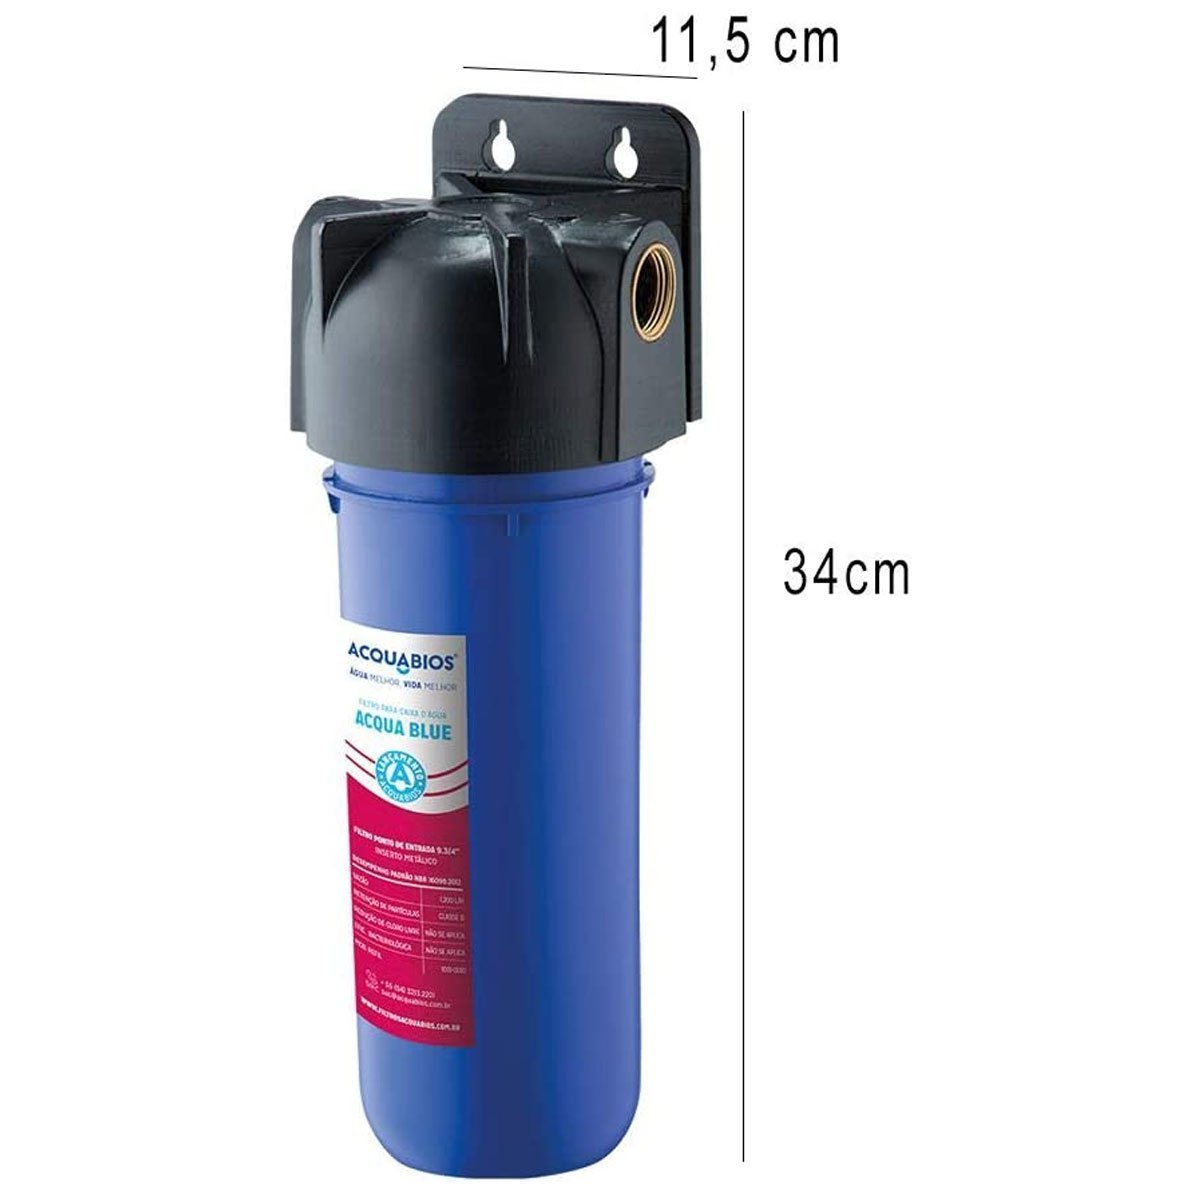 Filtro para Caixa de Água Acqua Blue Acquabios 1200L/H Rosca 3/4' com Refil Extra - 2